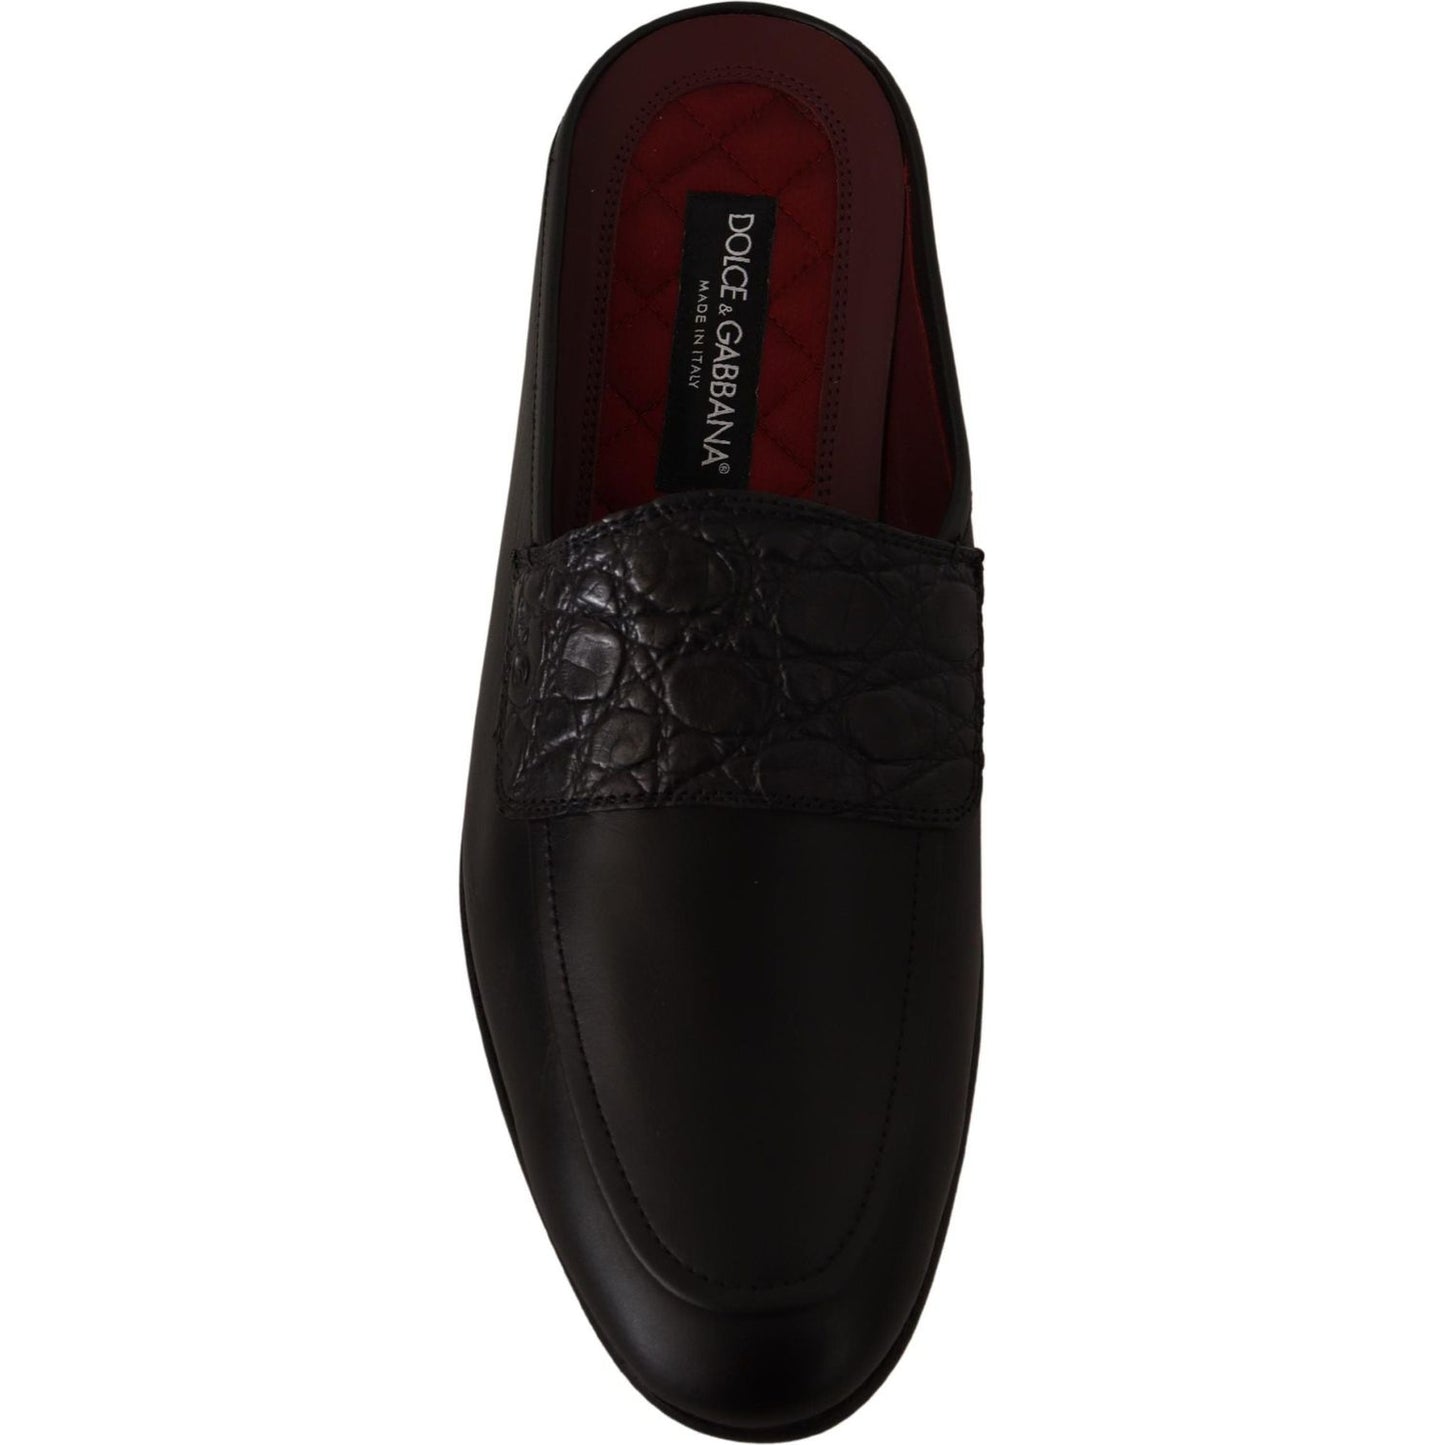 Dolce & Gabbana Exquisite Black & Burgundy Leather Slides black-leather-caiman-sandals-slides-slip-shoes IMG_1677-scaled-7fa540d3-5c2.jpg